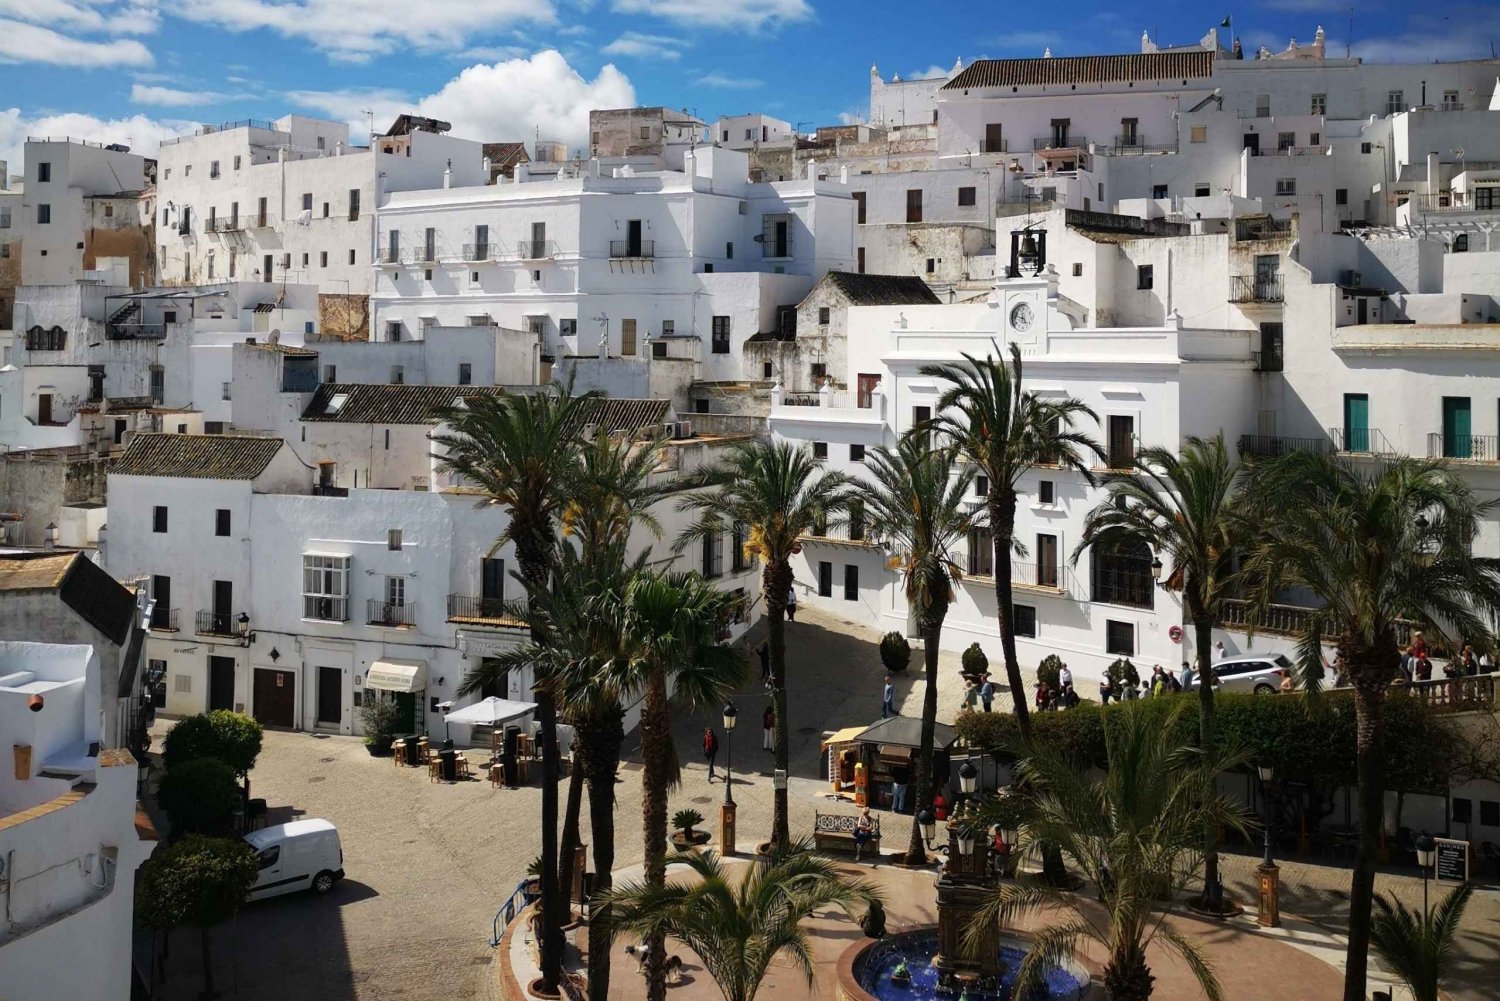 Private udflugter til hvide kystbyer og strande fra Sevilla